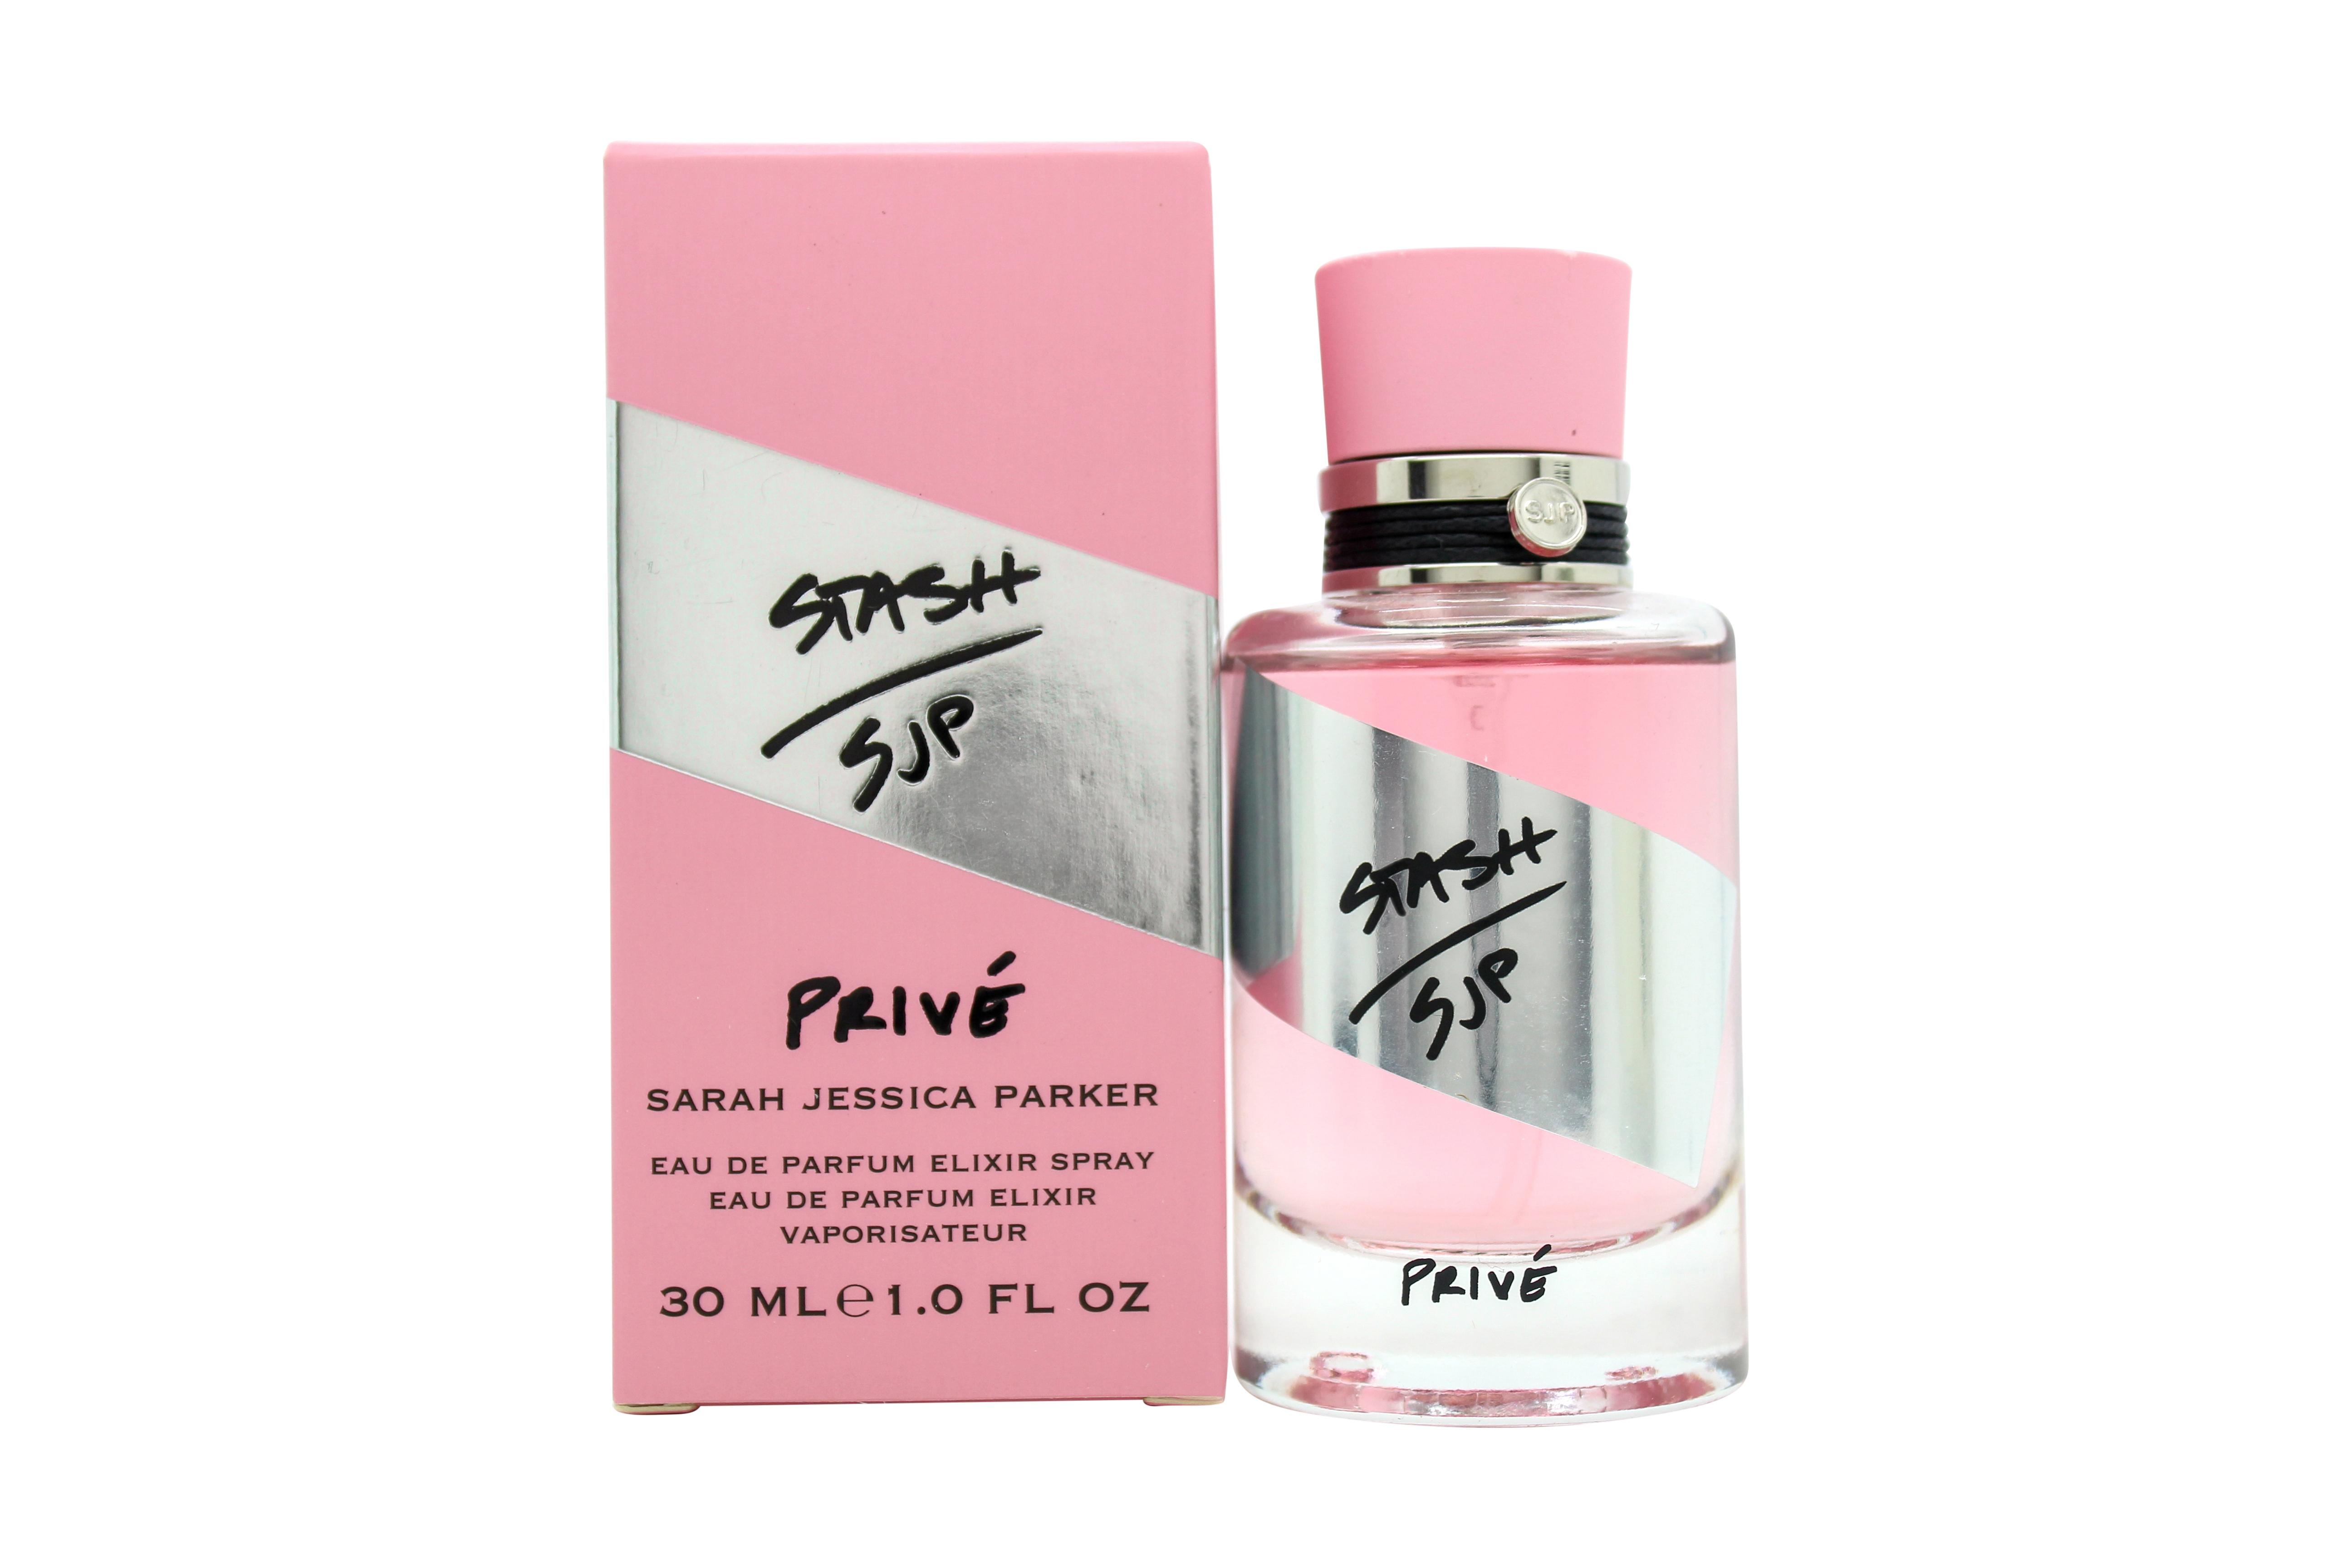 Sarah Jessica Parker Stash Prive Eau de Parfum 30ml Spray